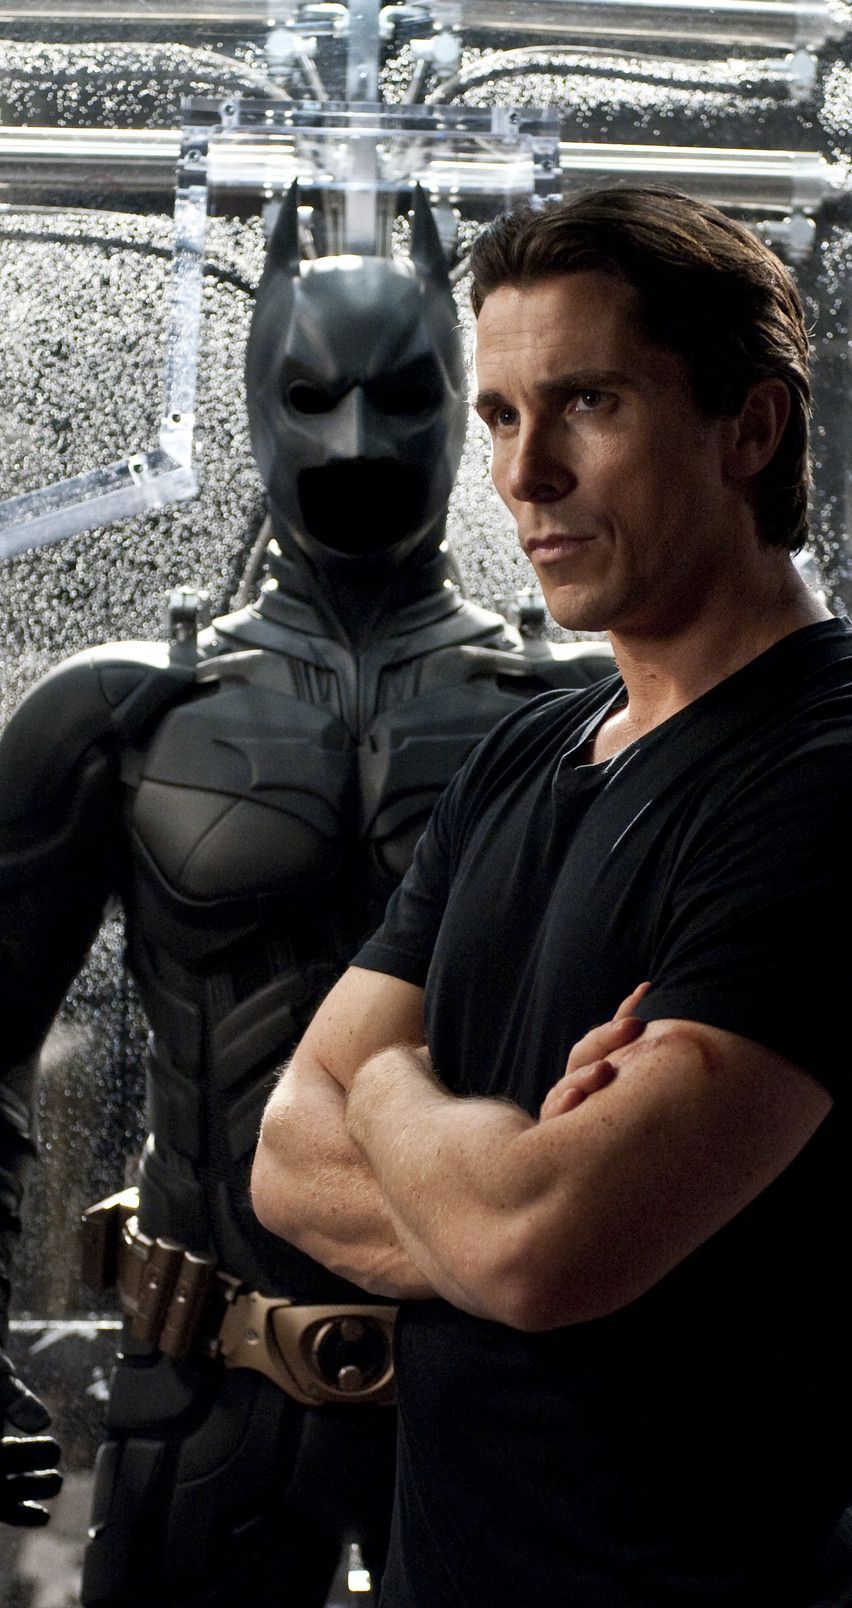 Christian Bale. Batman christian bale, Christian bale, Christian bale hot